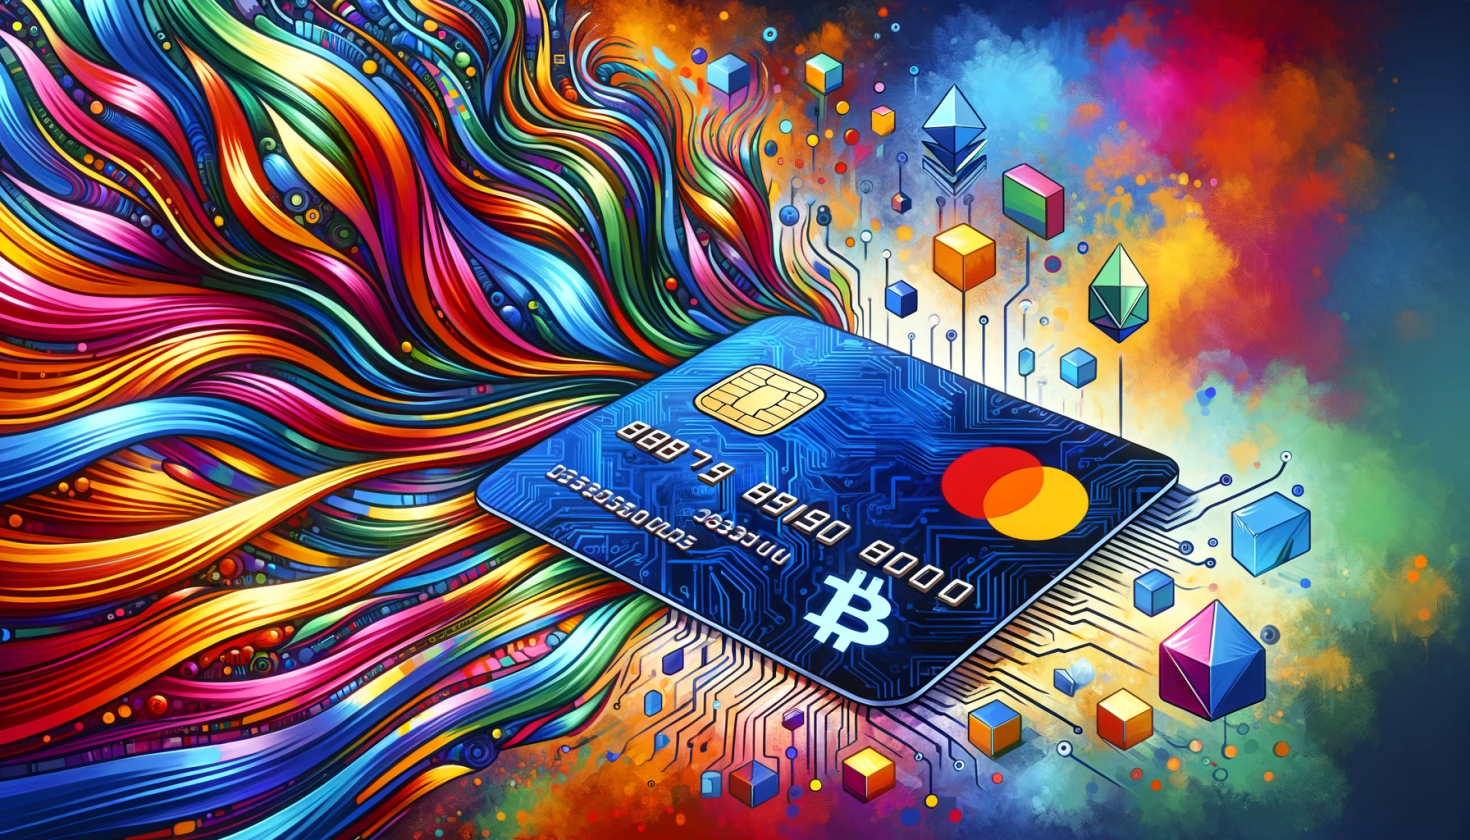 Ilustração vibrante e colorida mostrando a fusão de cartões de crédito e criptomoedas, com um cartão de crédito central em um padrão dinâmico que combina elementos tradicionais e digitais.